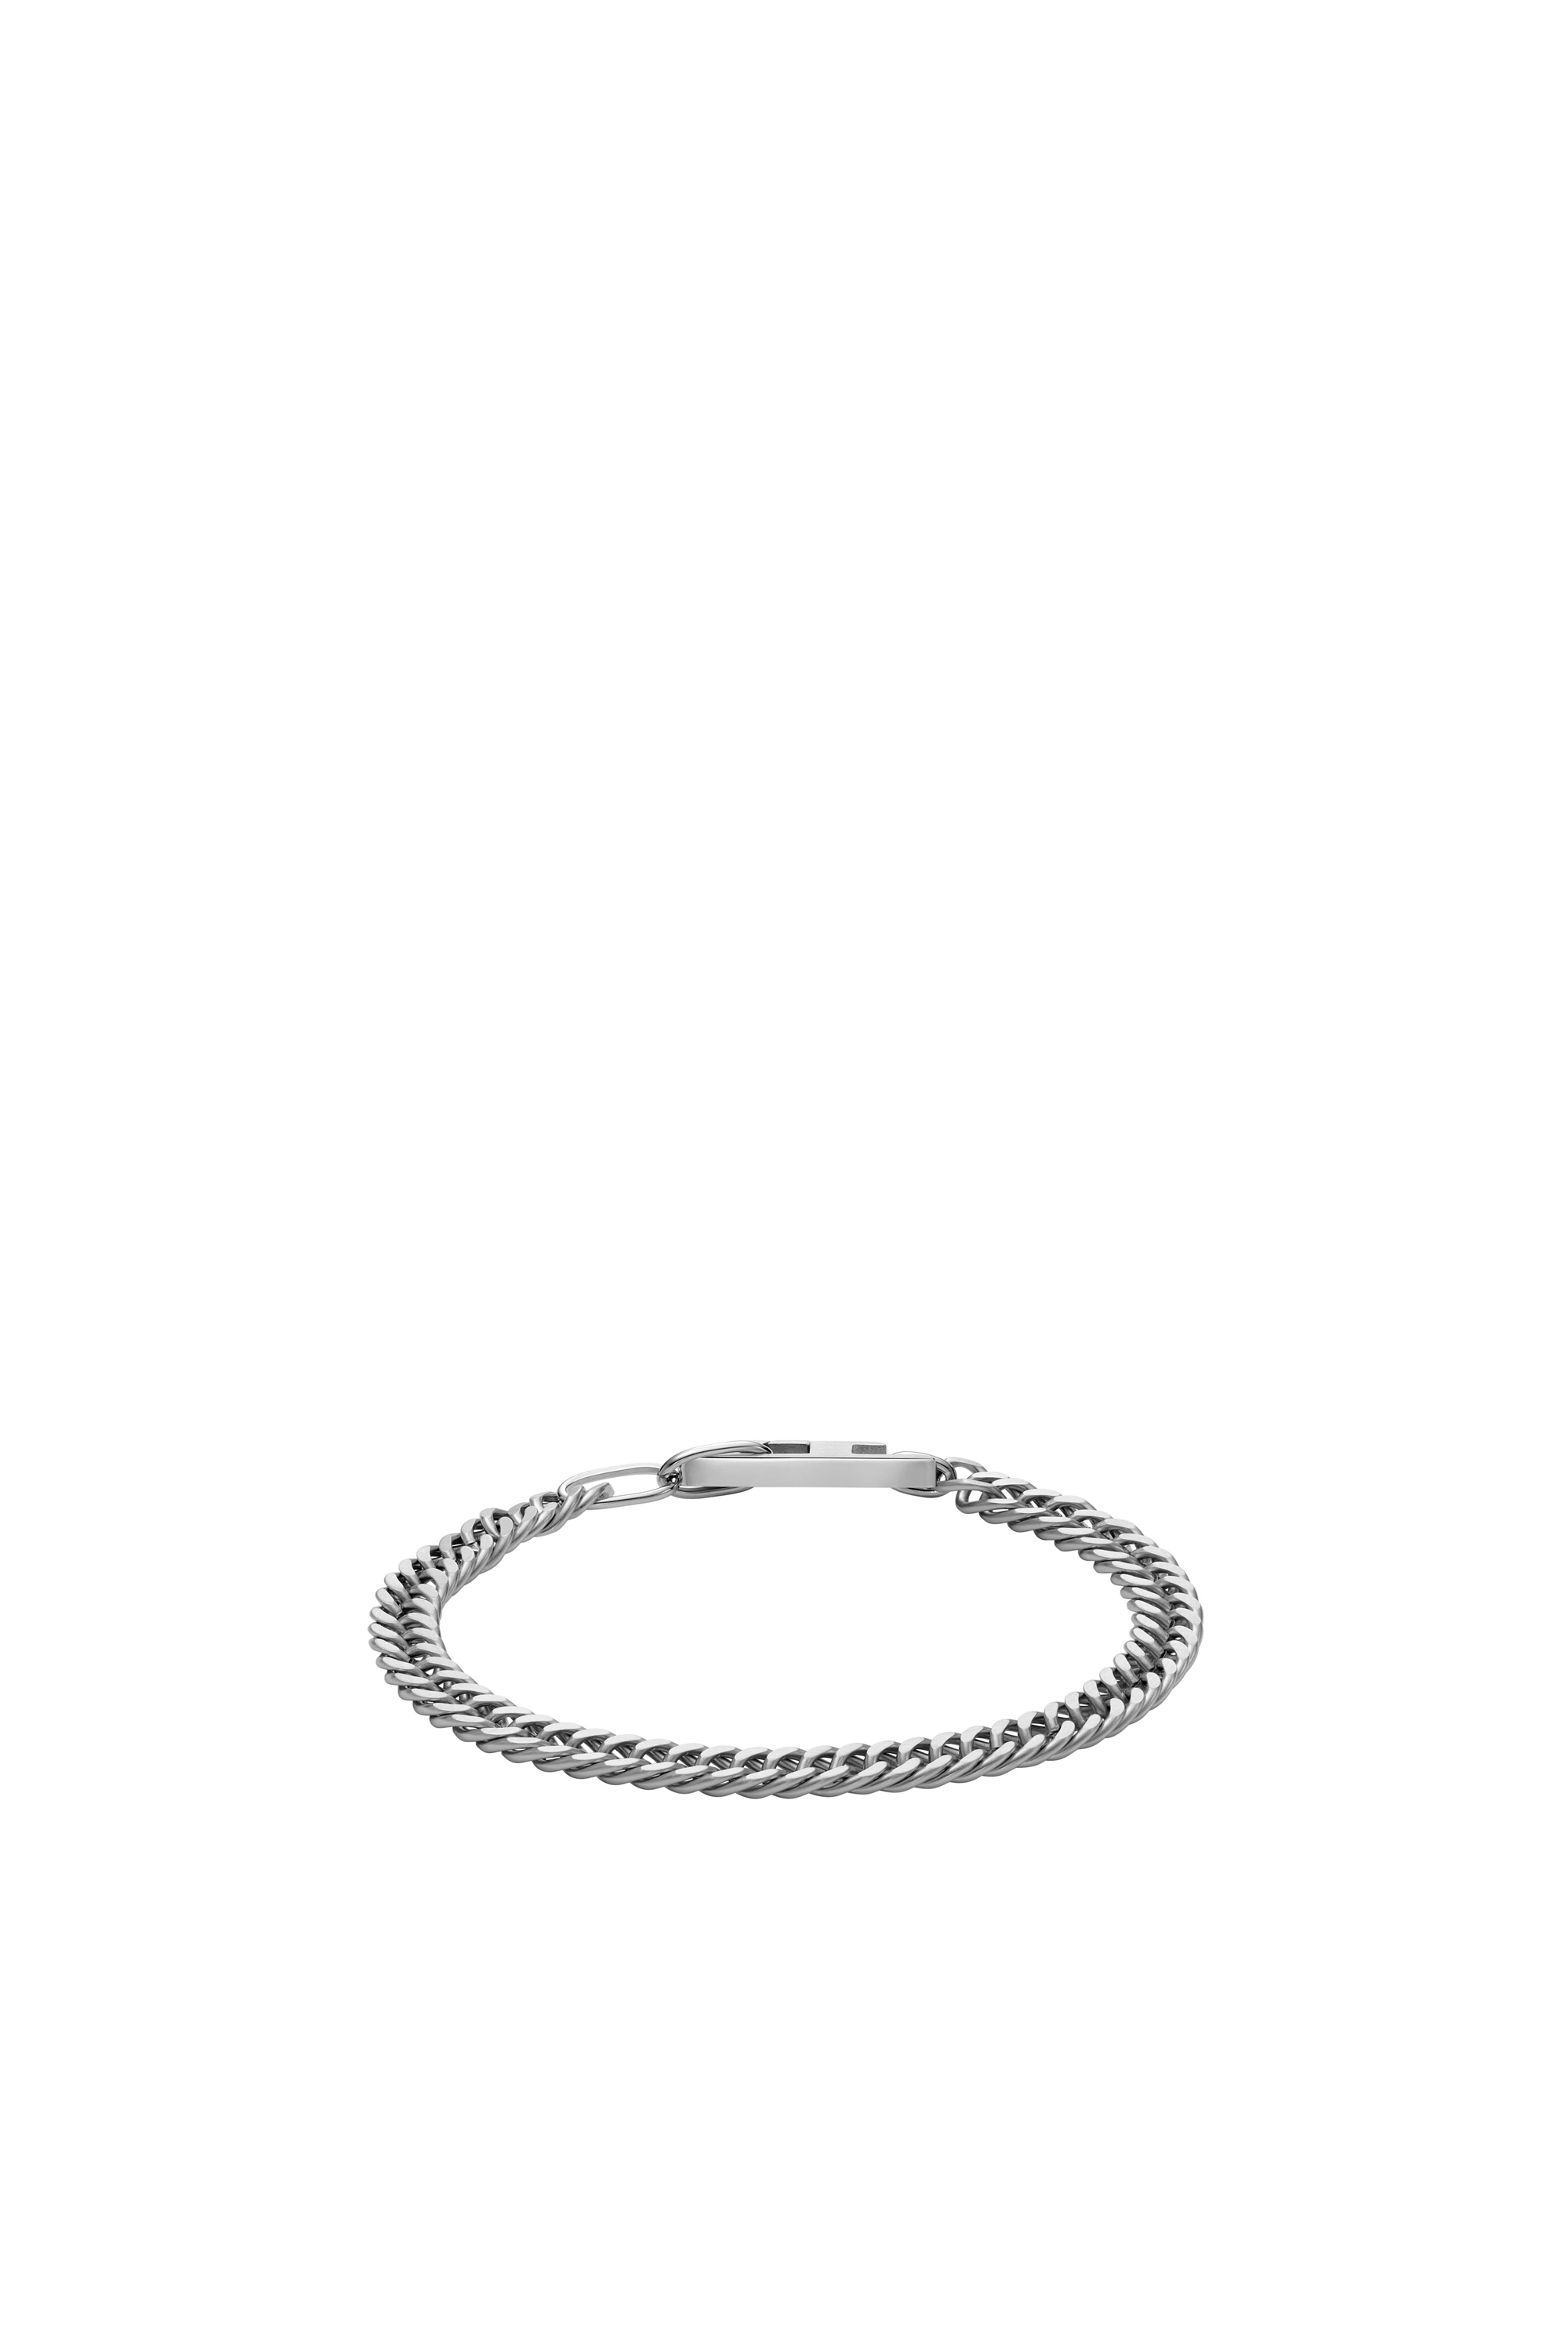 Diesel - DX1510, Mixte Bracelet chaîne en acier inoxydable in Gris argenté - Image 2